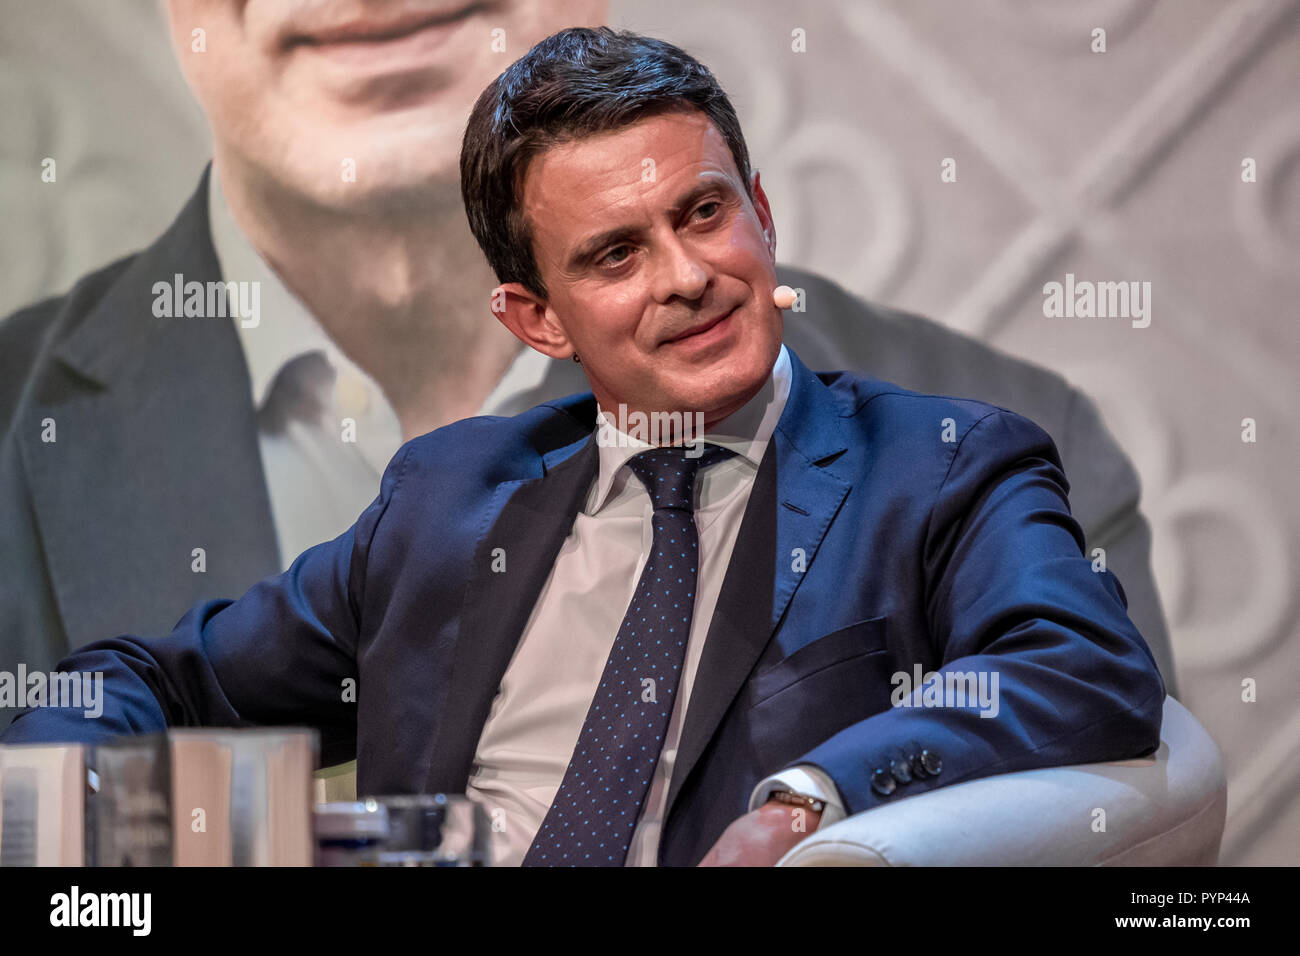 Manuel Valls, candidato a la alcaldía de Barcelona se observa durante la  presentación de su nuevo libro en una conversación con Mario Vargas Llosa  (no se muestra). Manuel Valls, candidato a la